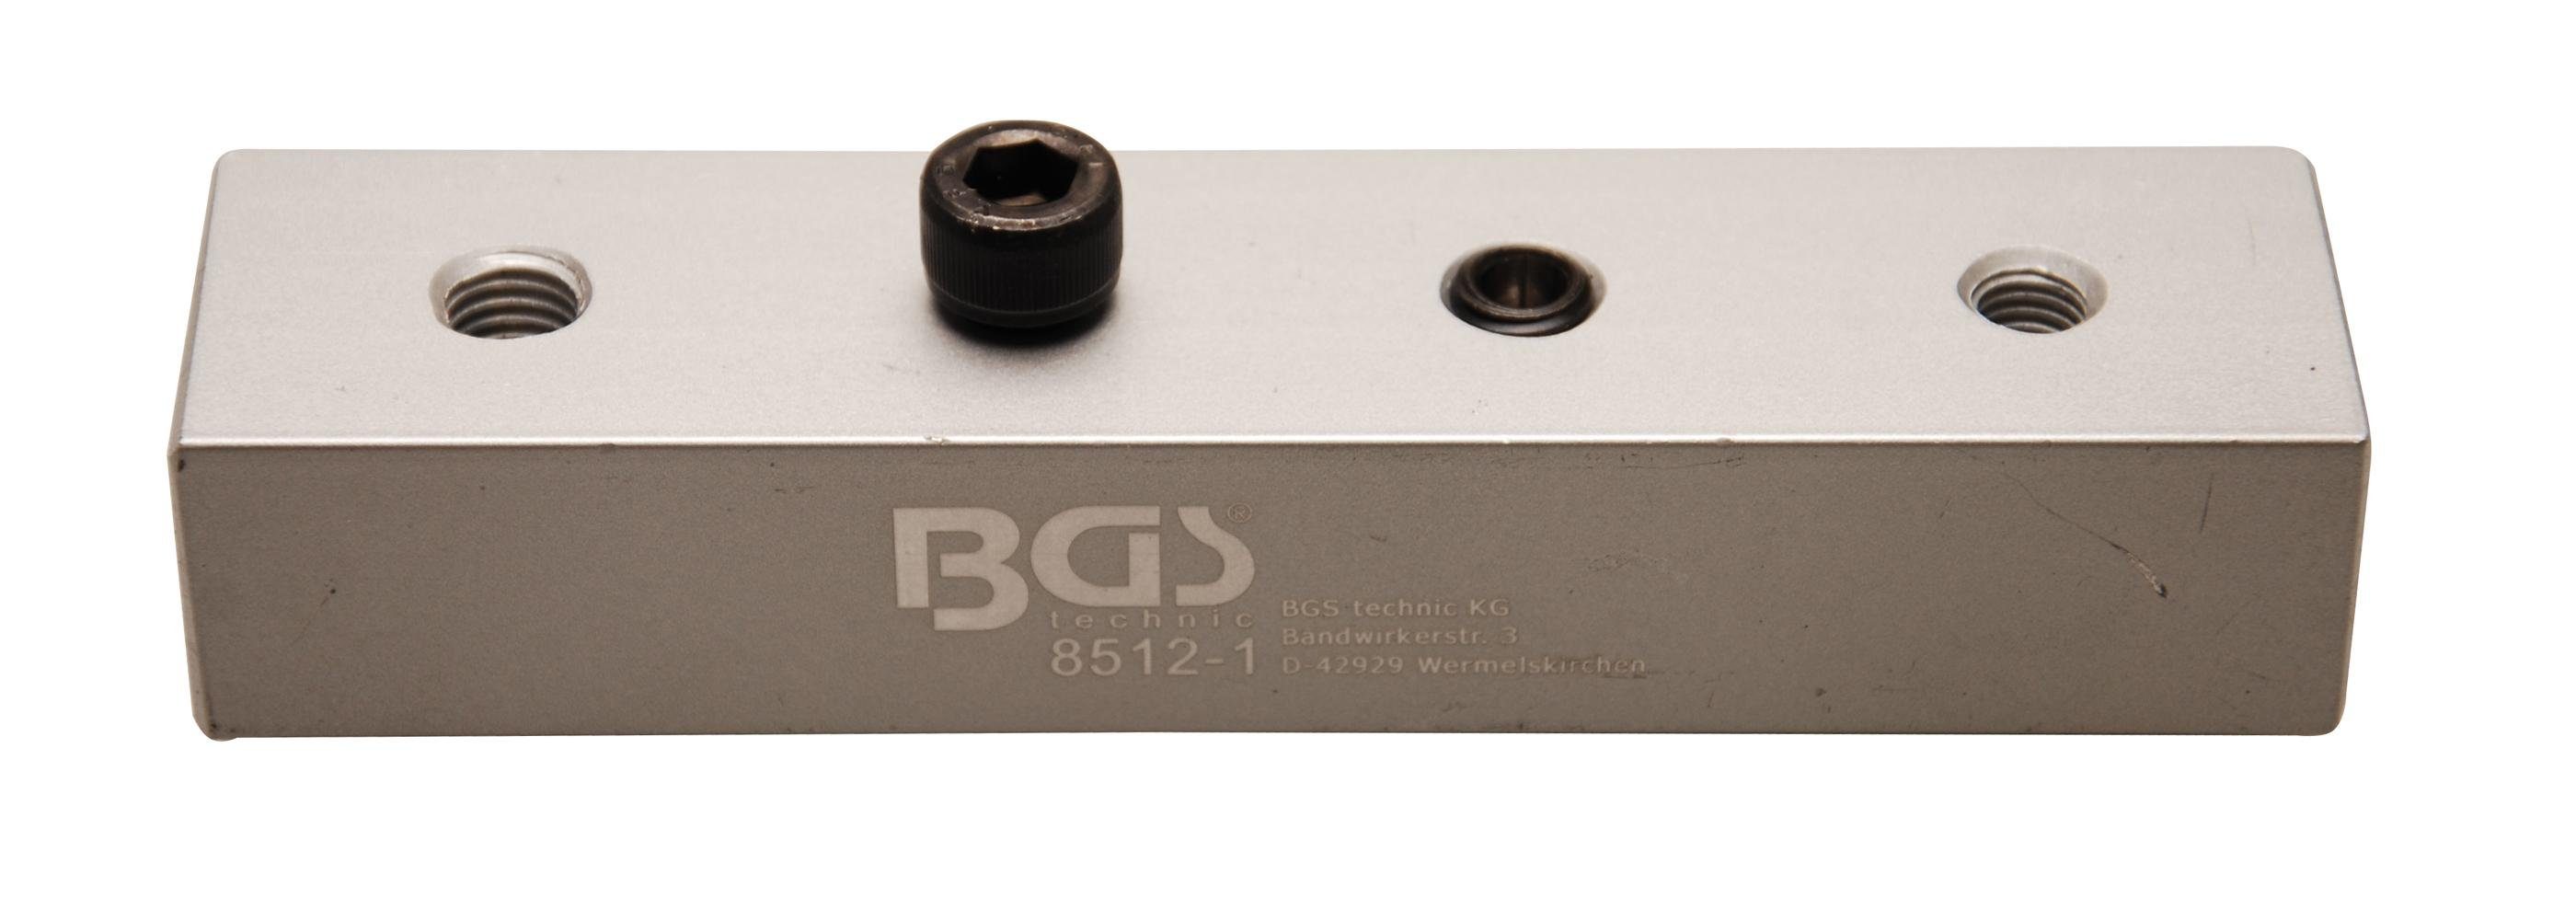 BGS Art. für Winkelschlüssel-Satz, Bit-Schraubendreher 8512 Demo-Block für technic